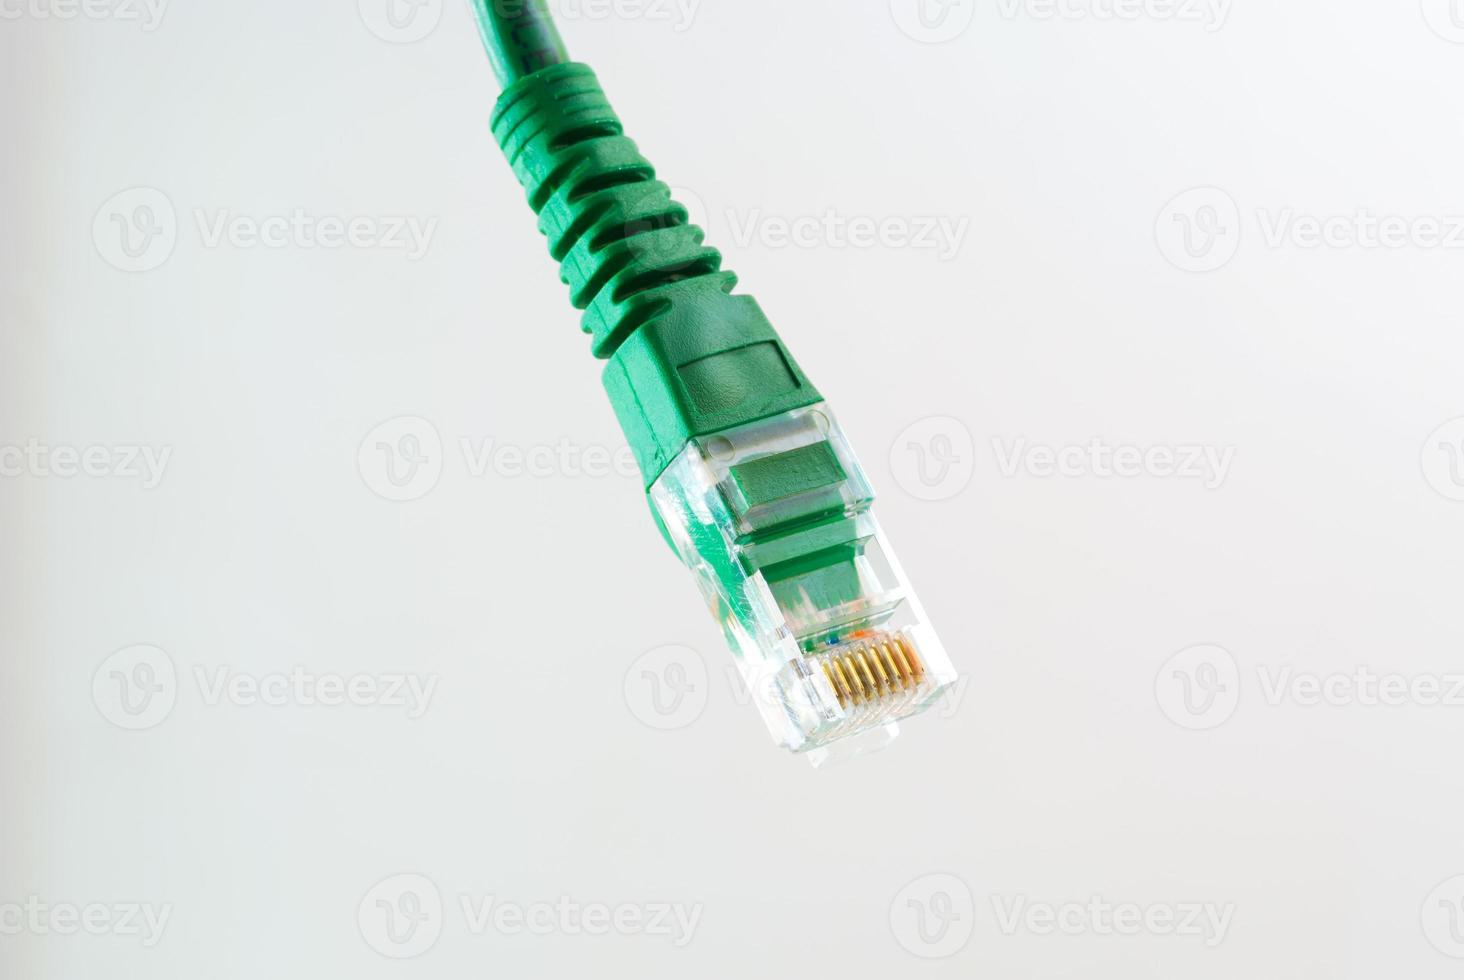 Câble réseau tête rj45 sur fond blanc photo